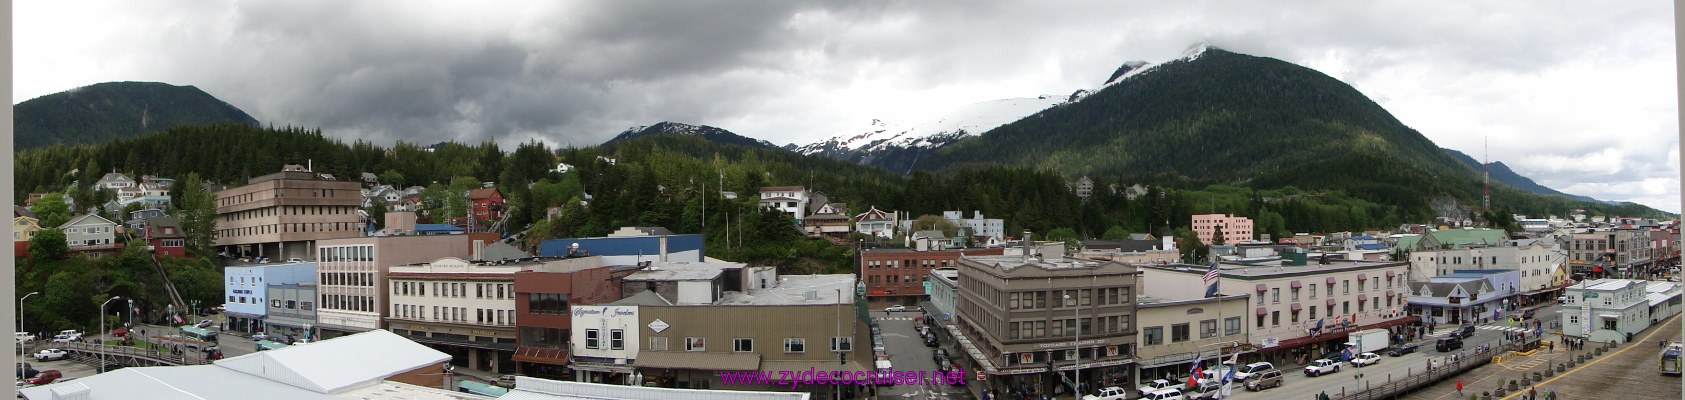 104: Carnival Spirit, Alaska, Ketchikan, Panorama